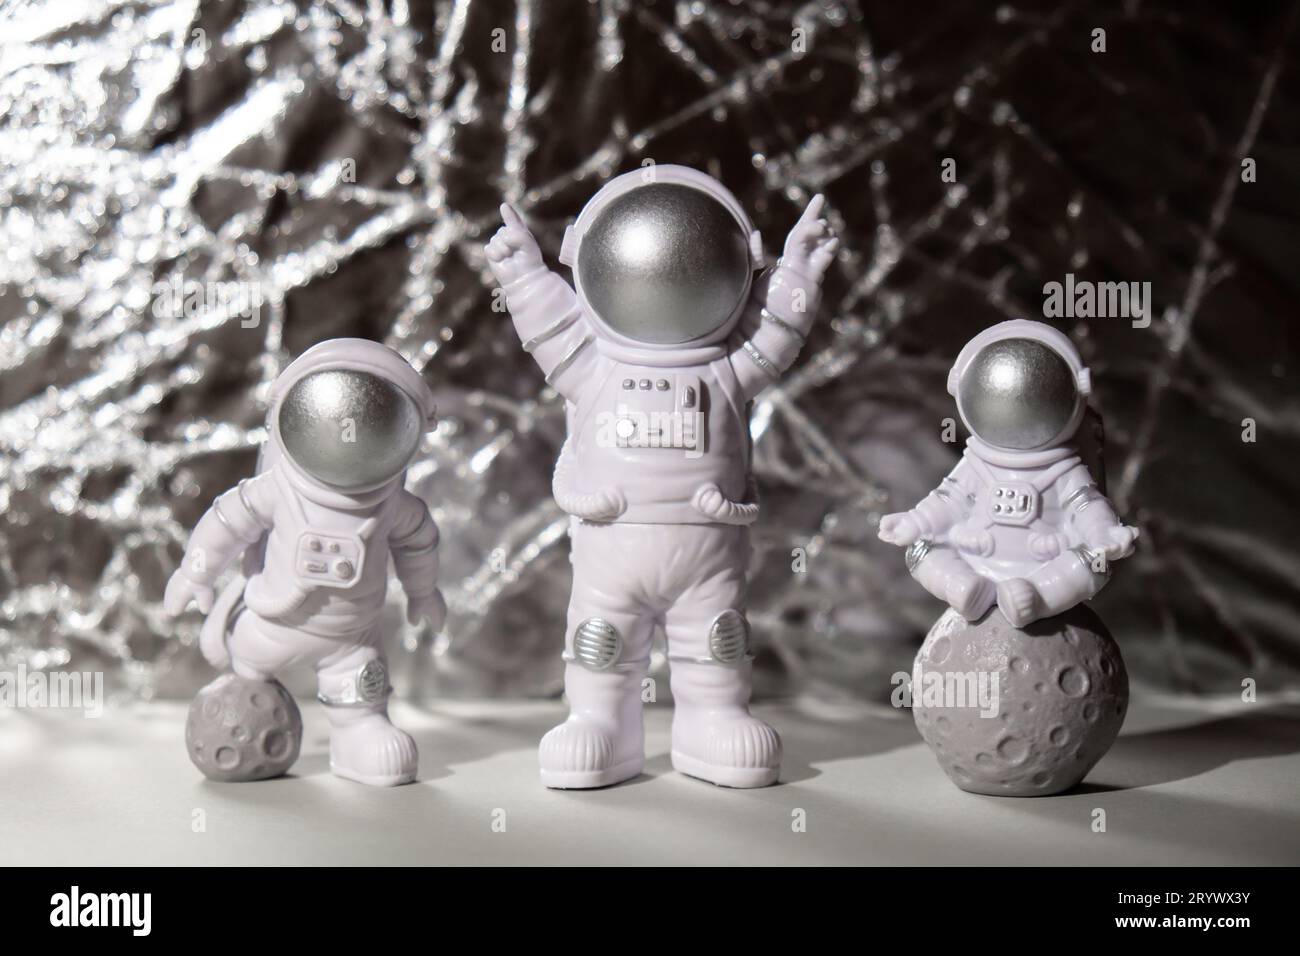 Trois jouets en plastique figure astronaute sur fond argenté Copy space. Concept de voyage hors de la terre, commercial d'homme spatial privé Banque D'Images